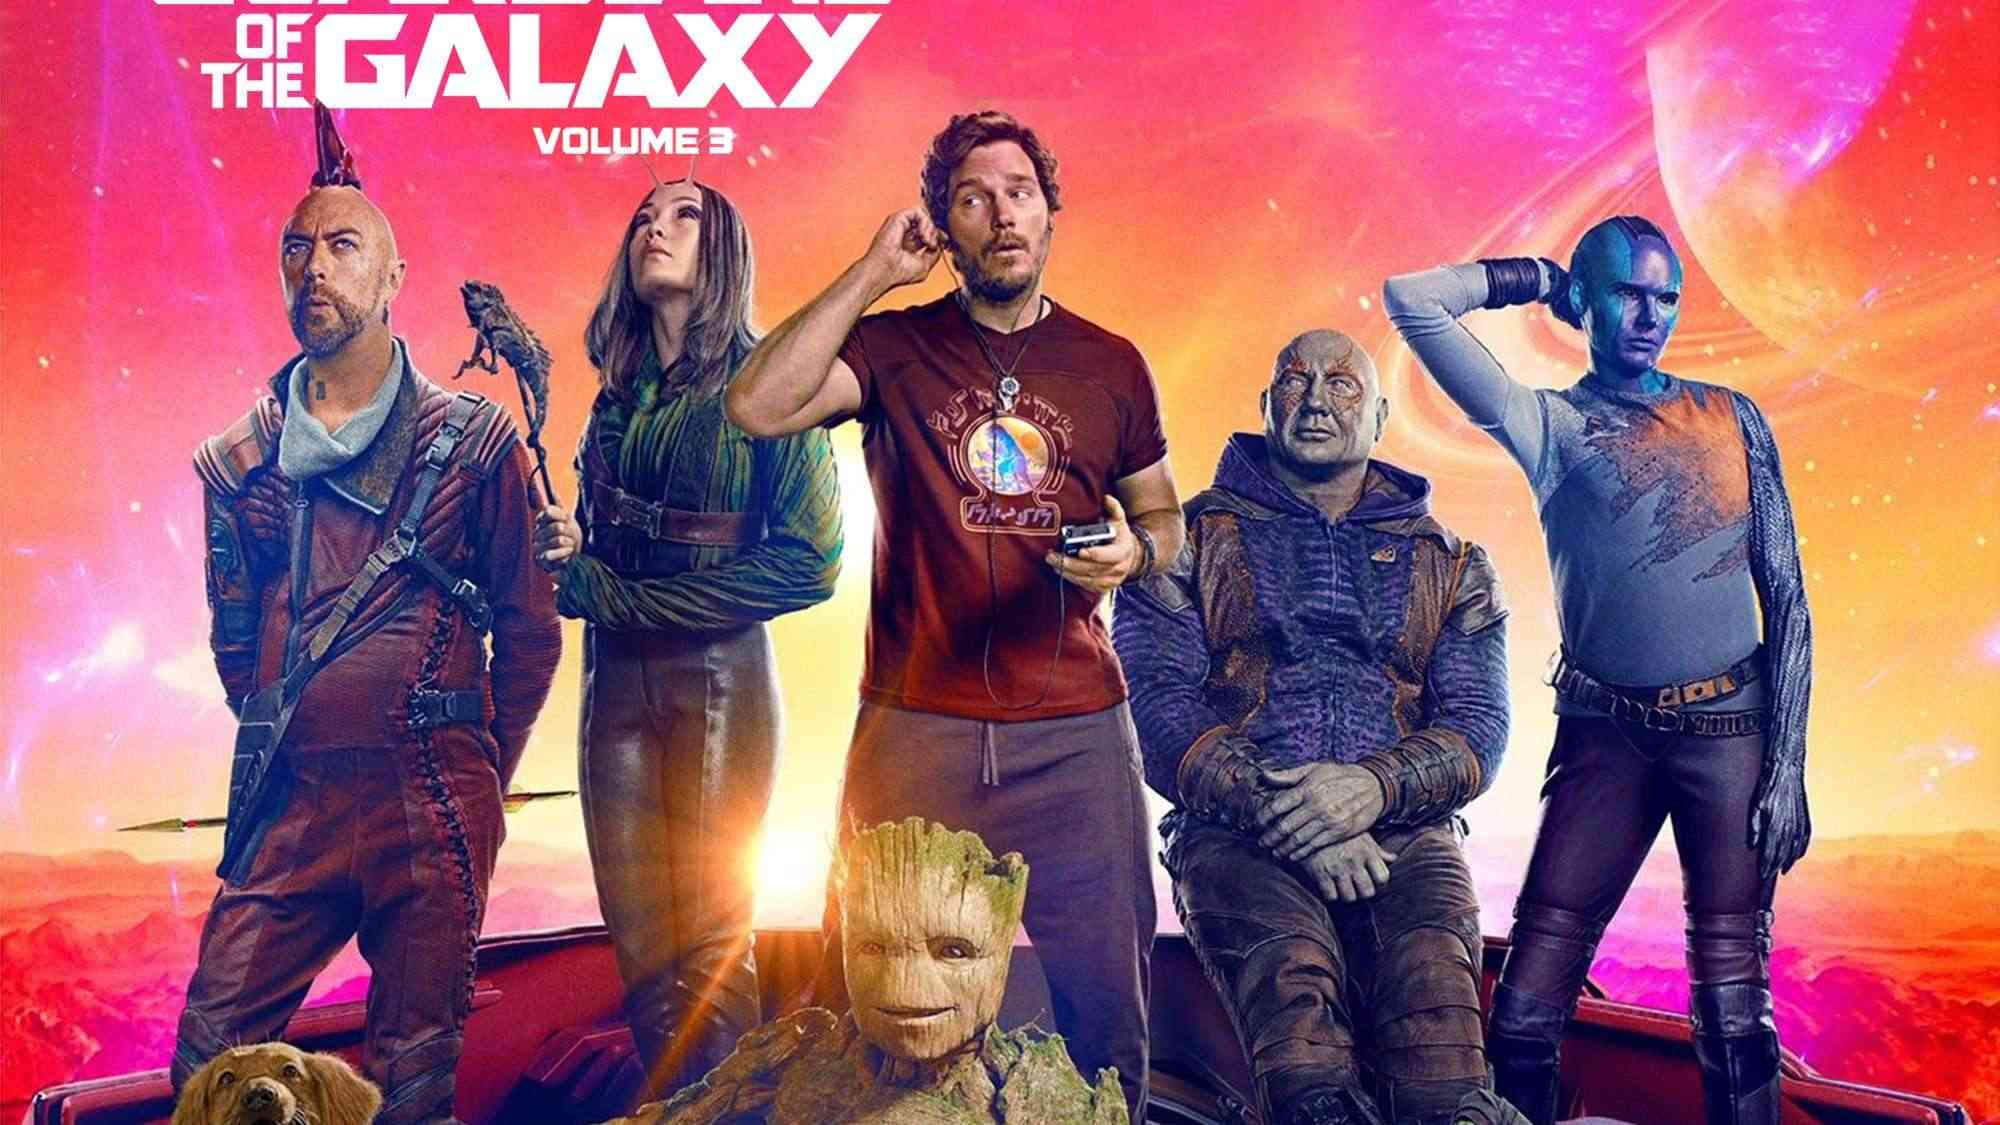 Guardians of the Galaxy Vol 3 nhận về nhiều đánh giá tích cực sau buổi công chiếu sớm